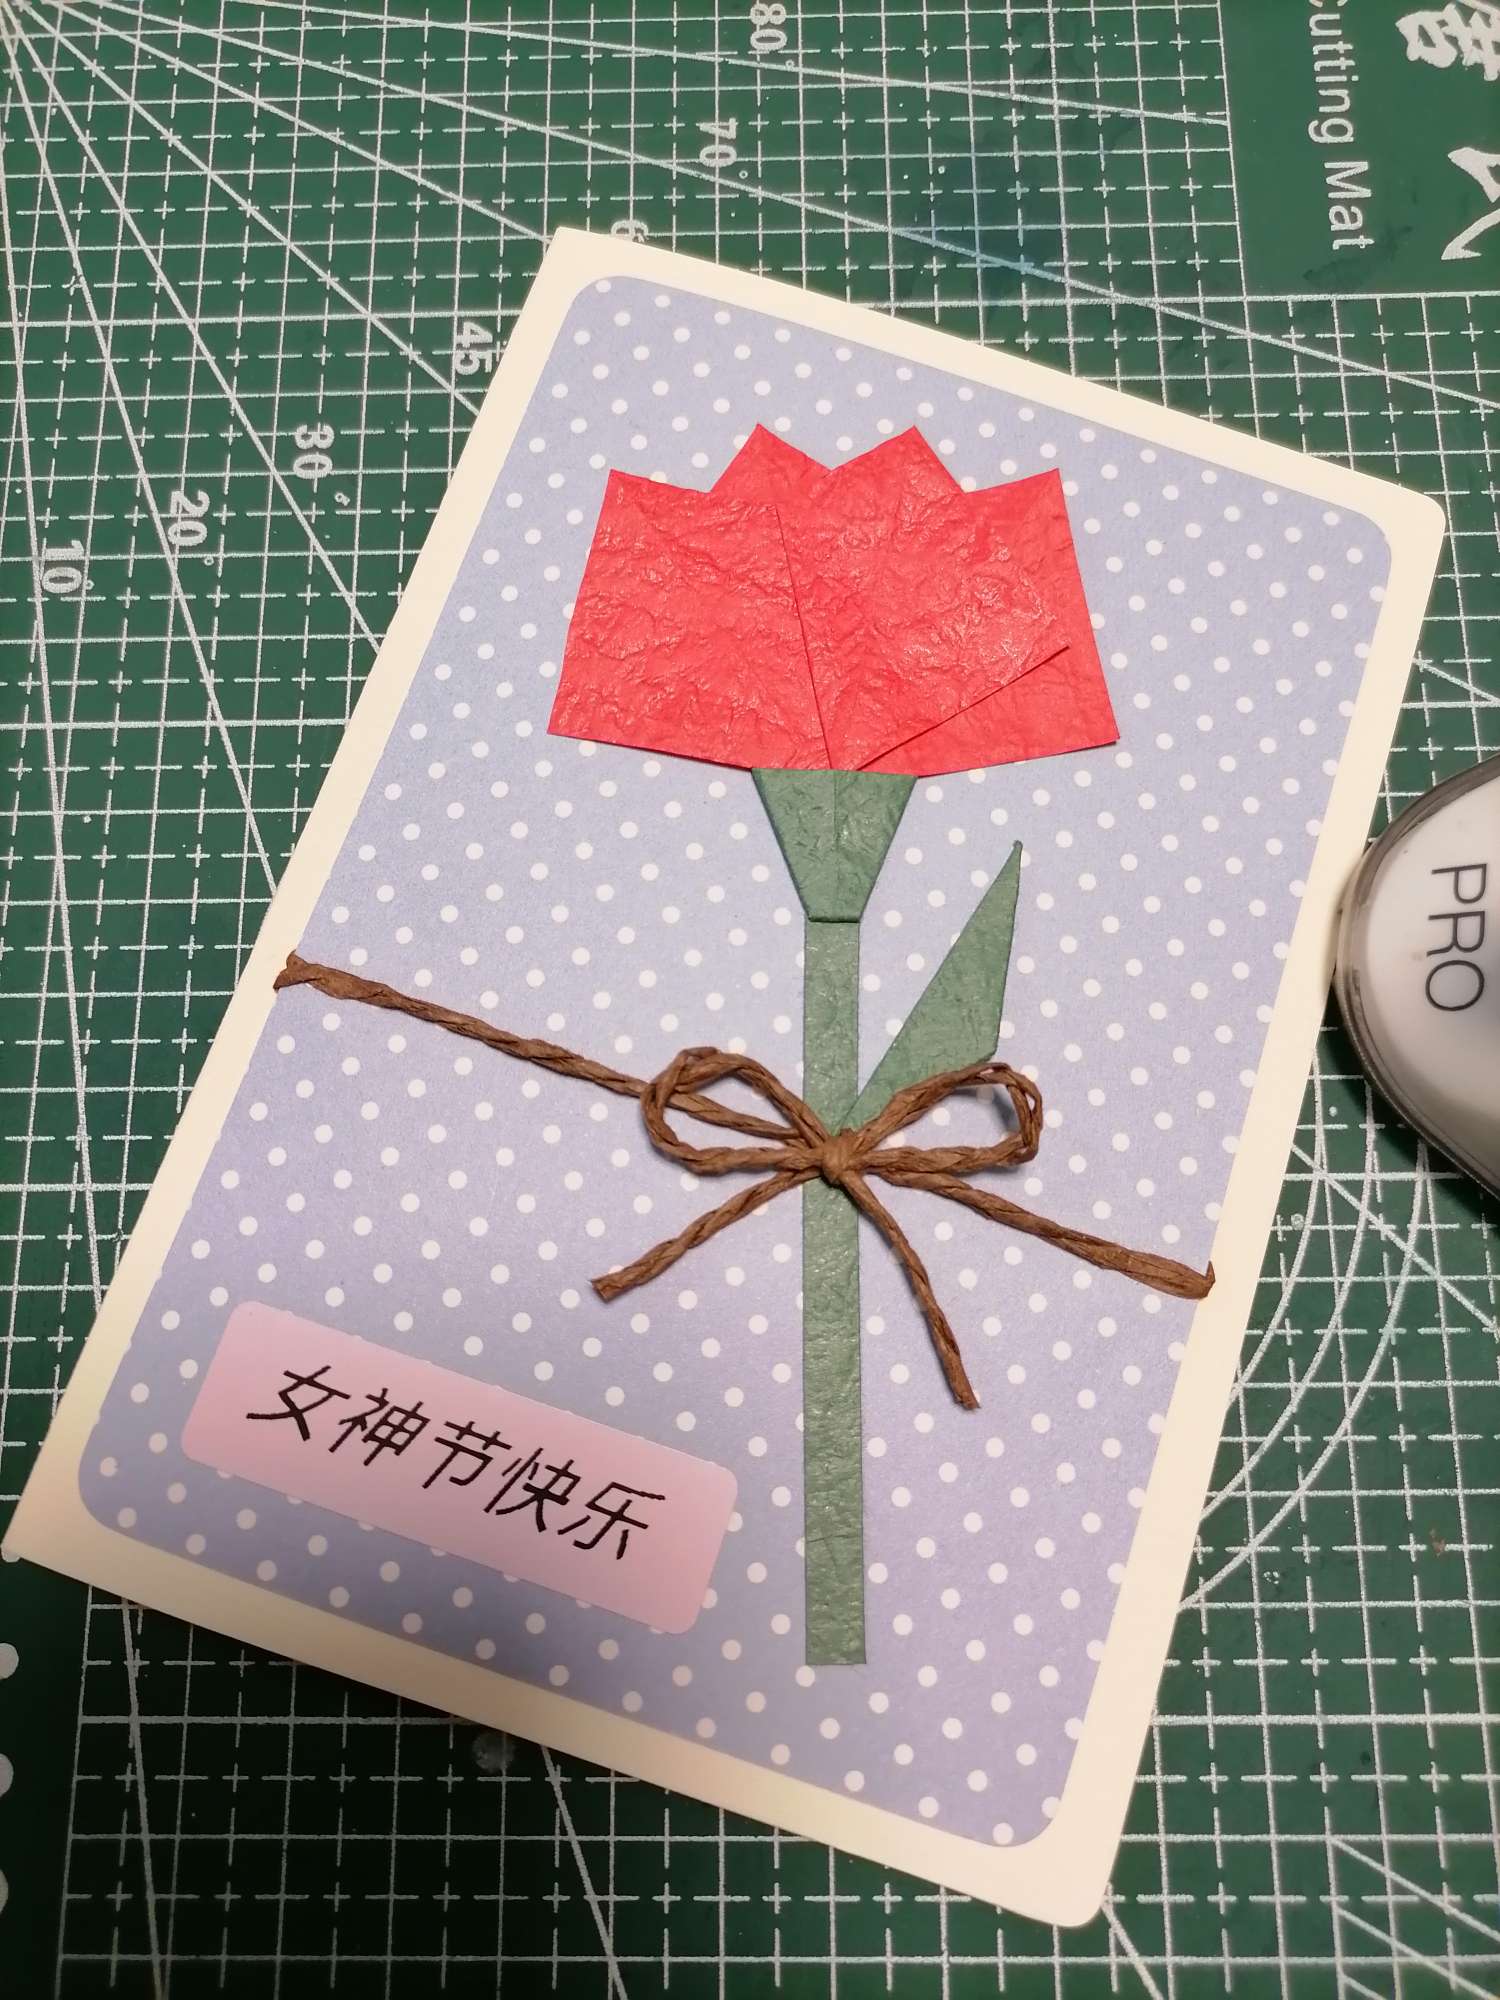 送你一朵小红花
换个祝福语也可以做母亲节贺卡等